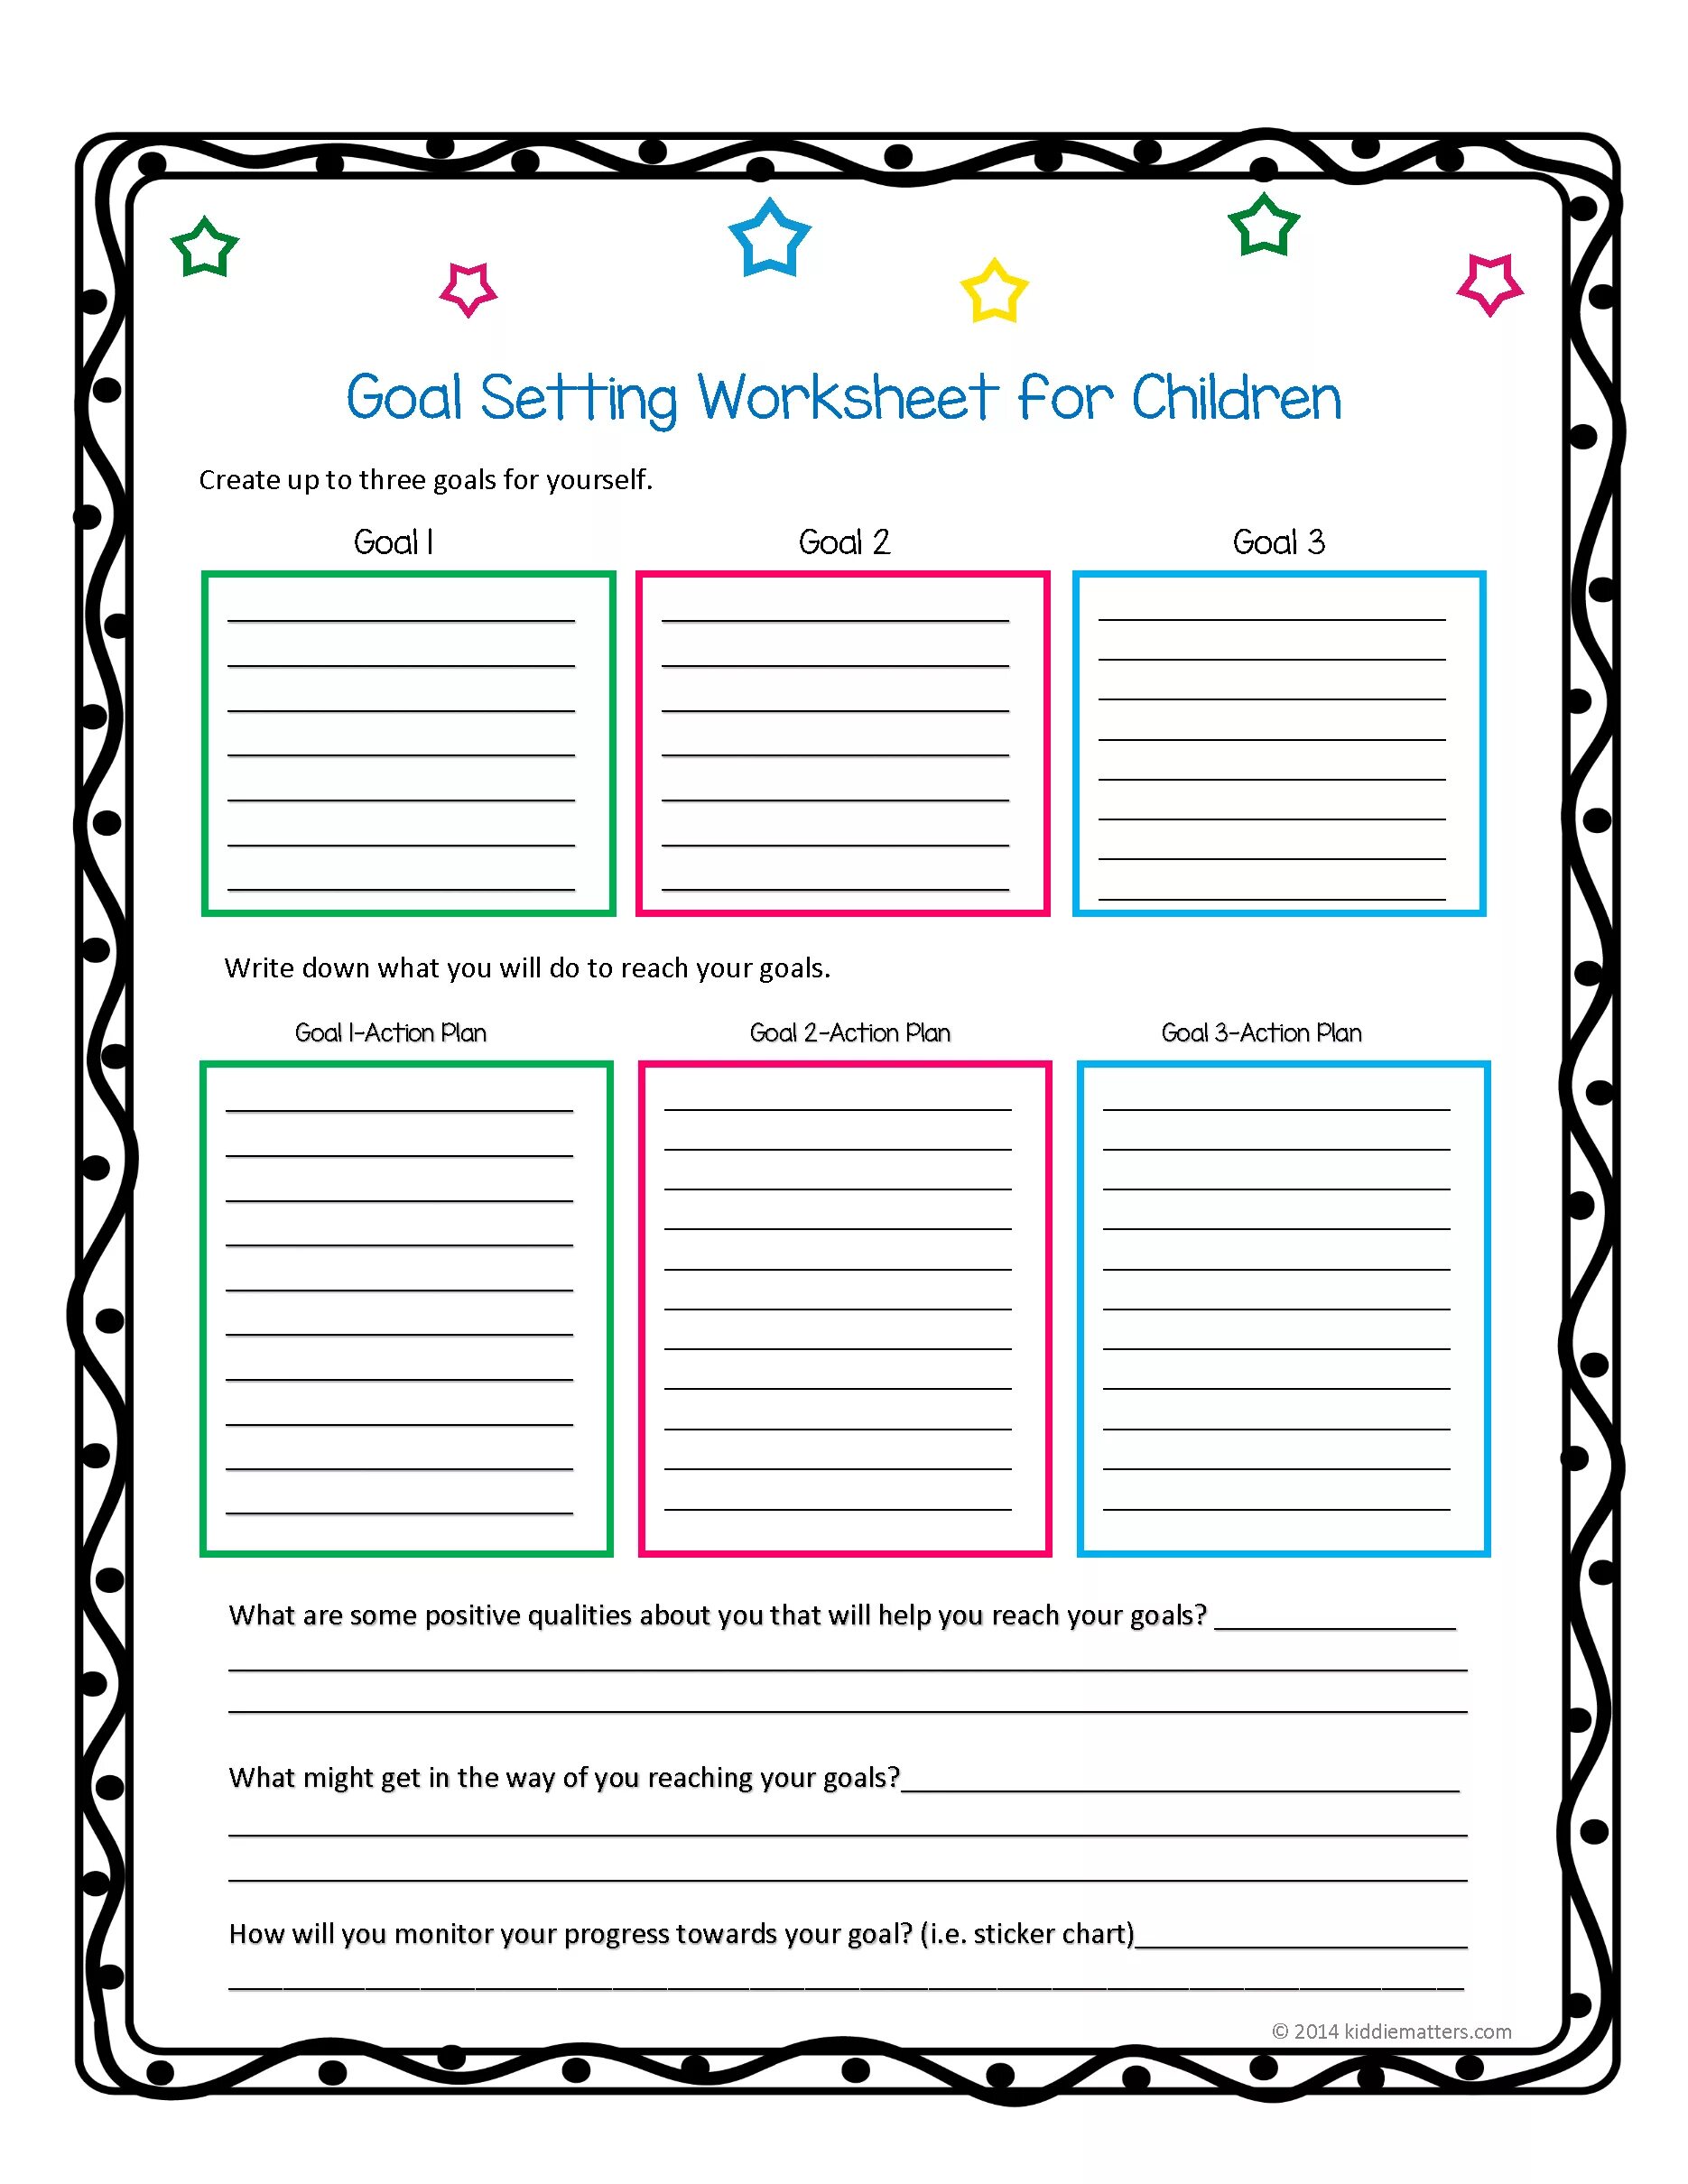 Tasks for students. Goals Worksheet. Worksheets для подростков. Goal setting. Worksheets for students.